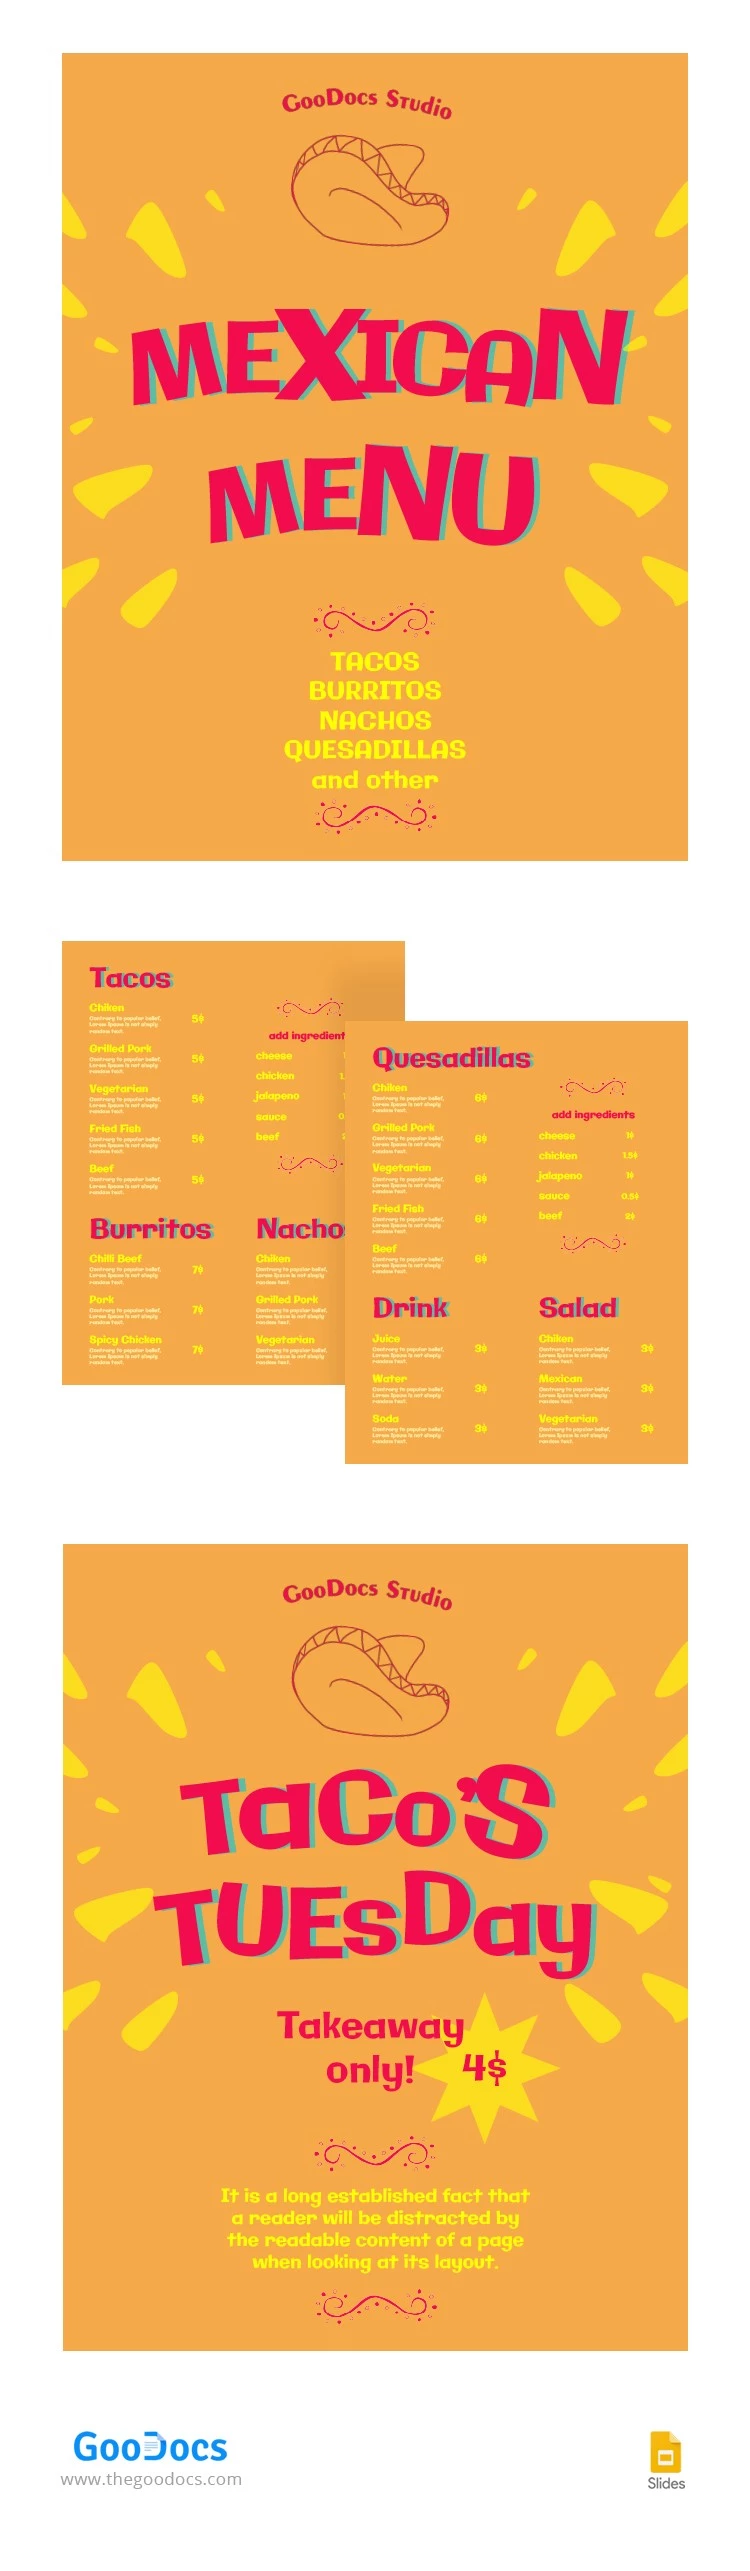 Menu del ristorante messicano Orange. - free Google Docs Template - 10064711